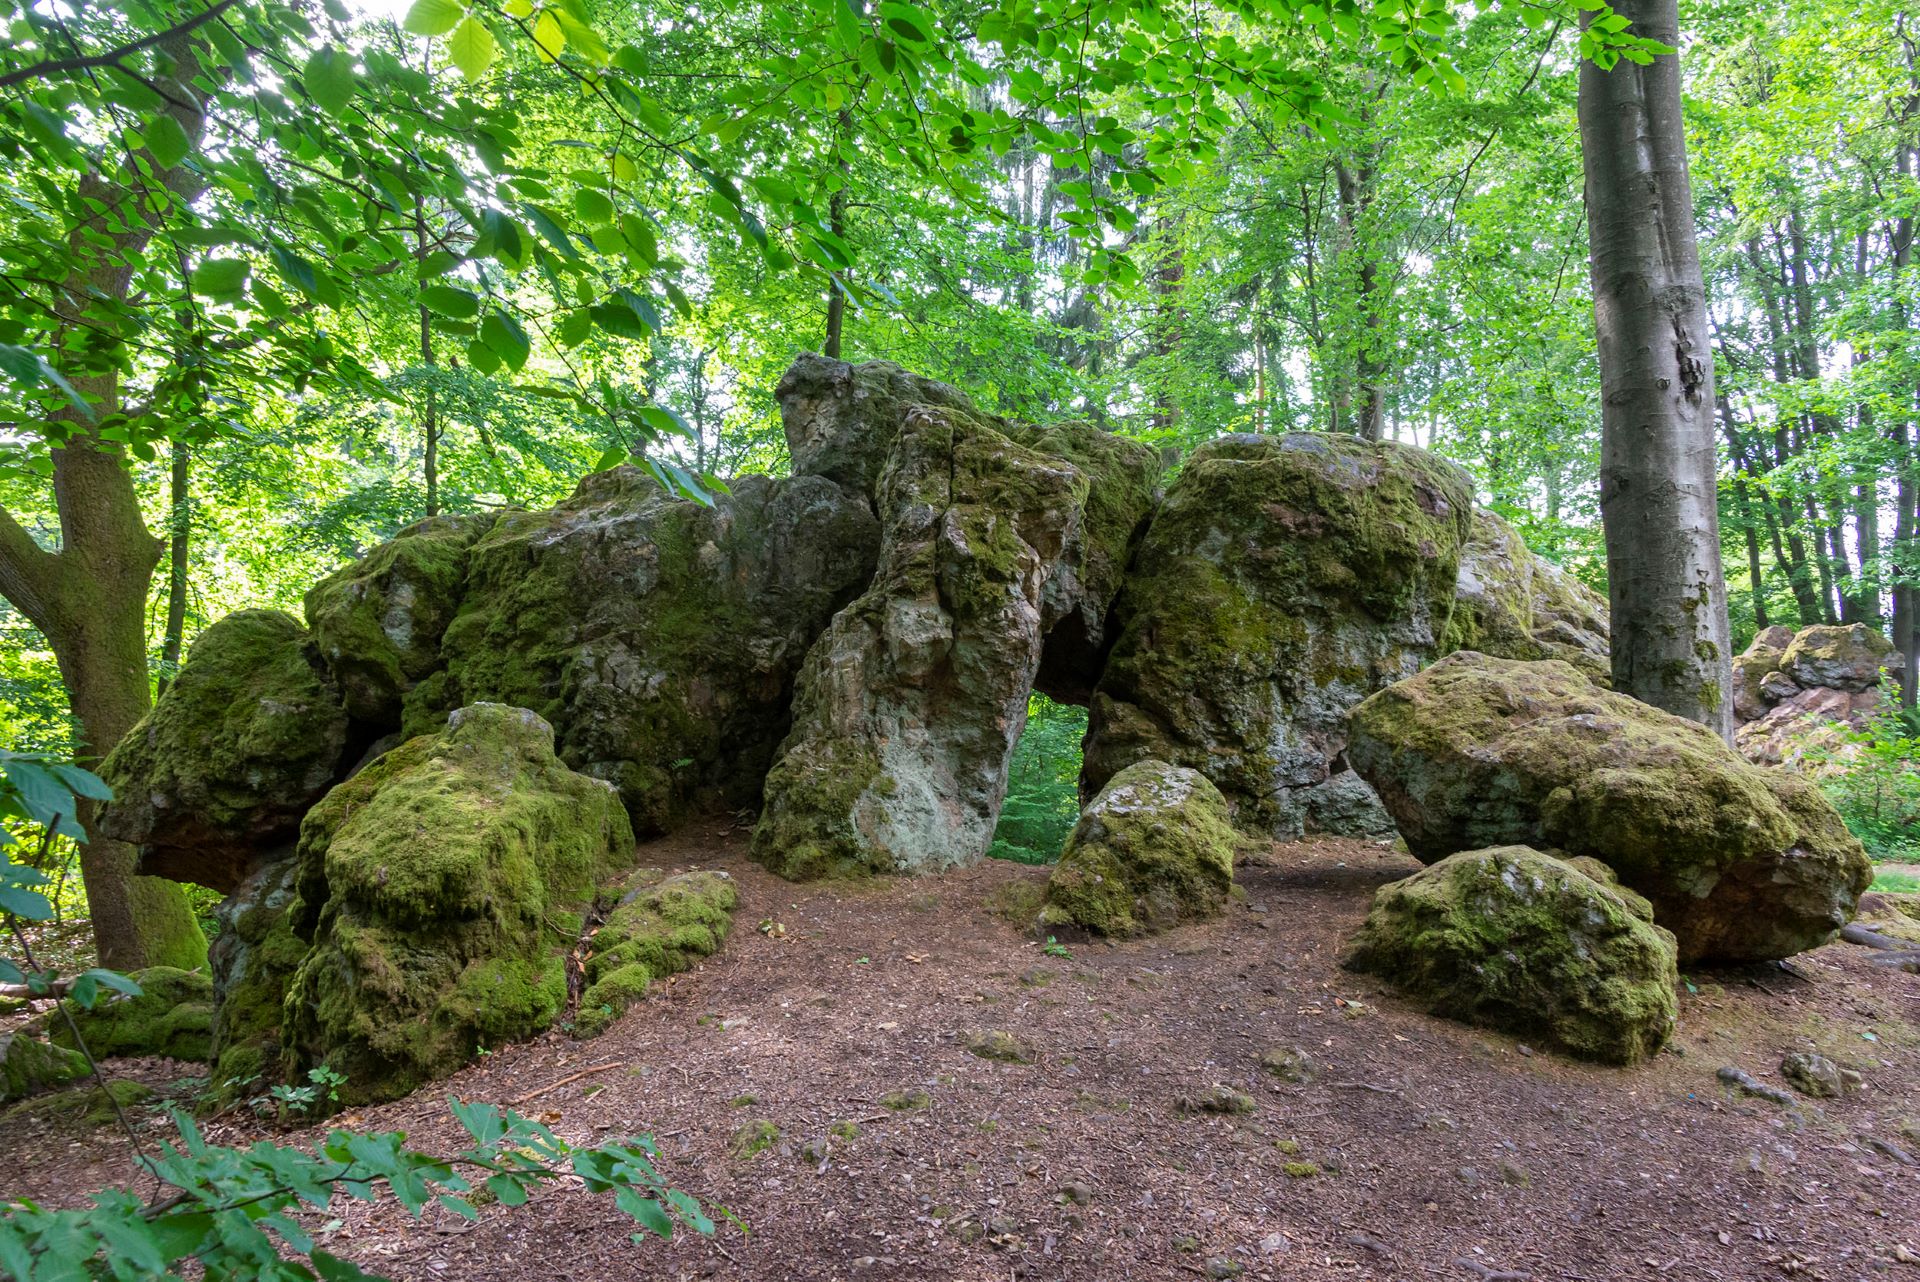 Die Ruinen eines alten Gebäudes sind mit Moos bedeckt und in einem Wald kaum zu erkennen.